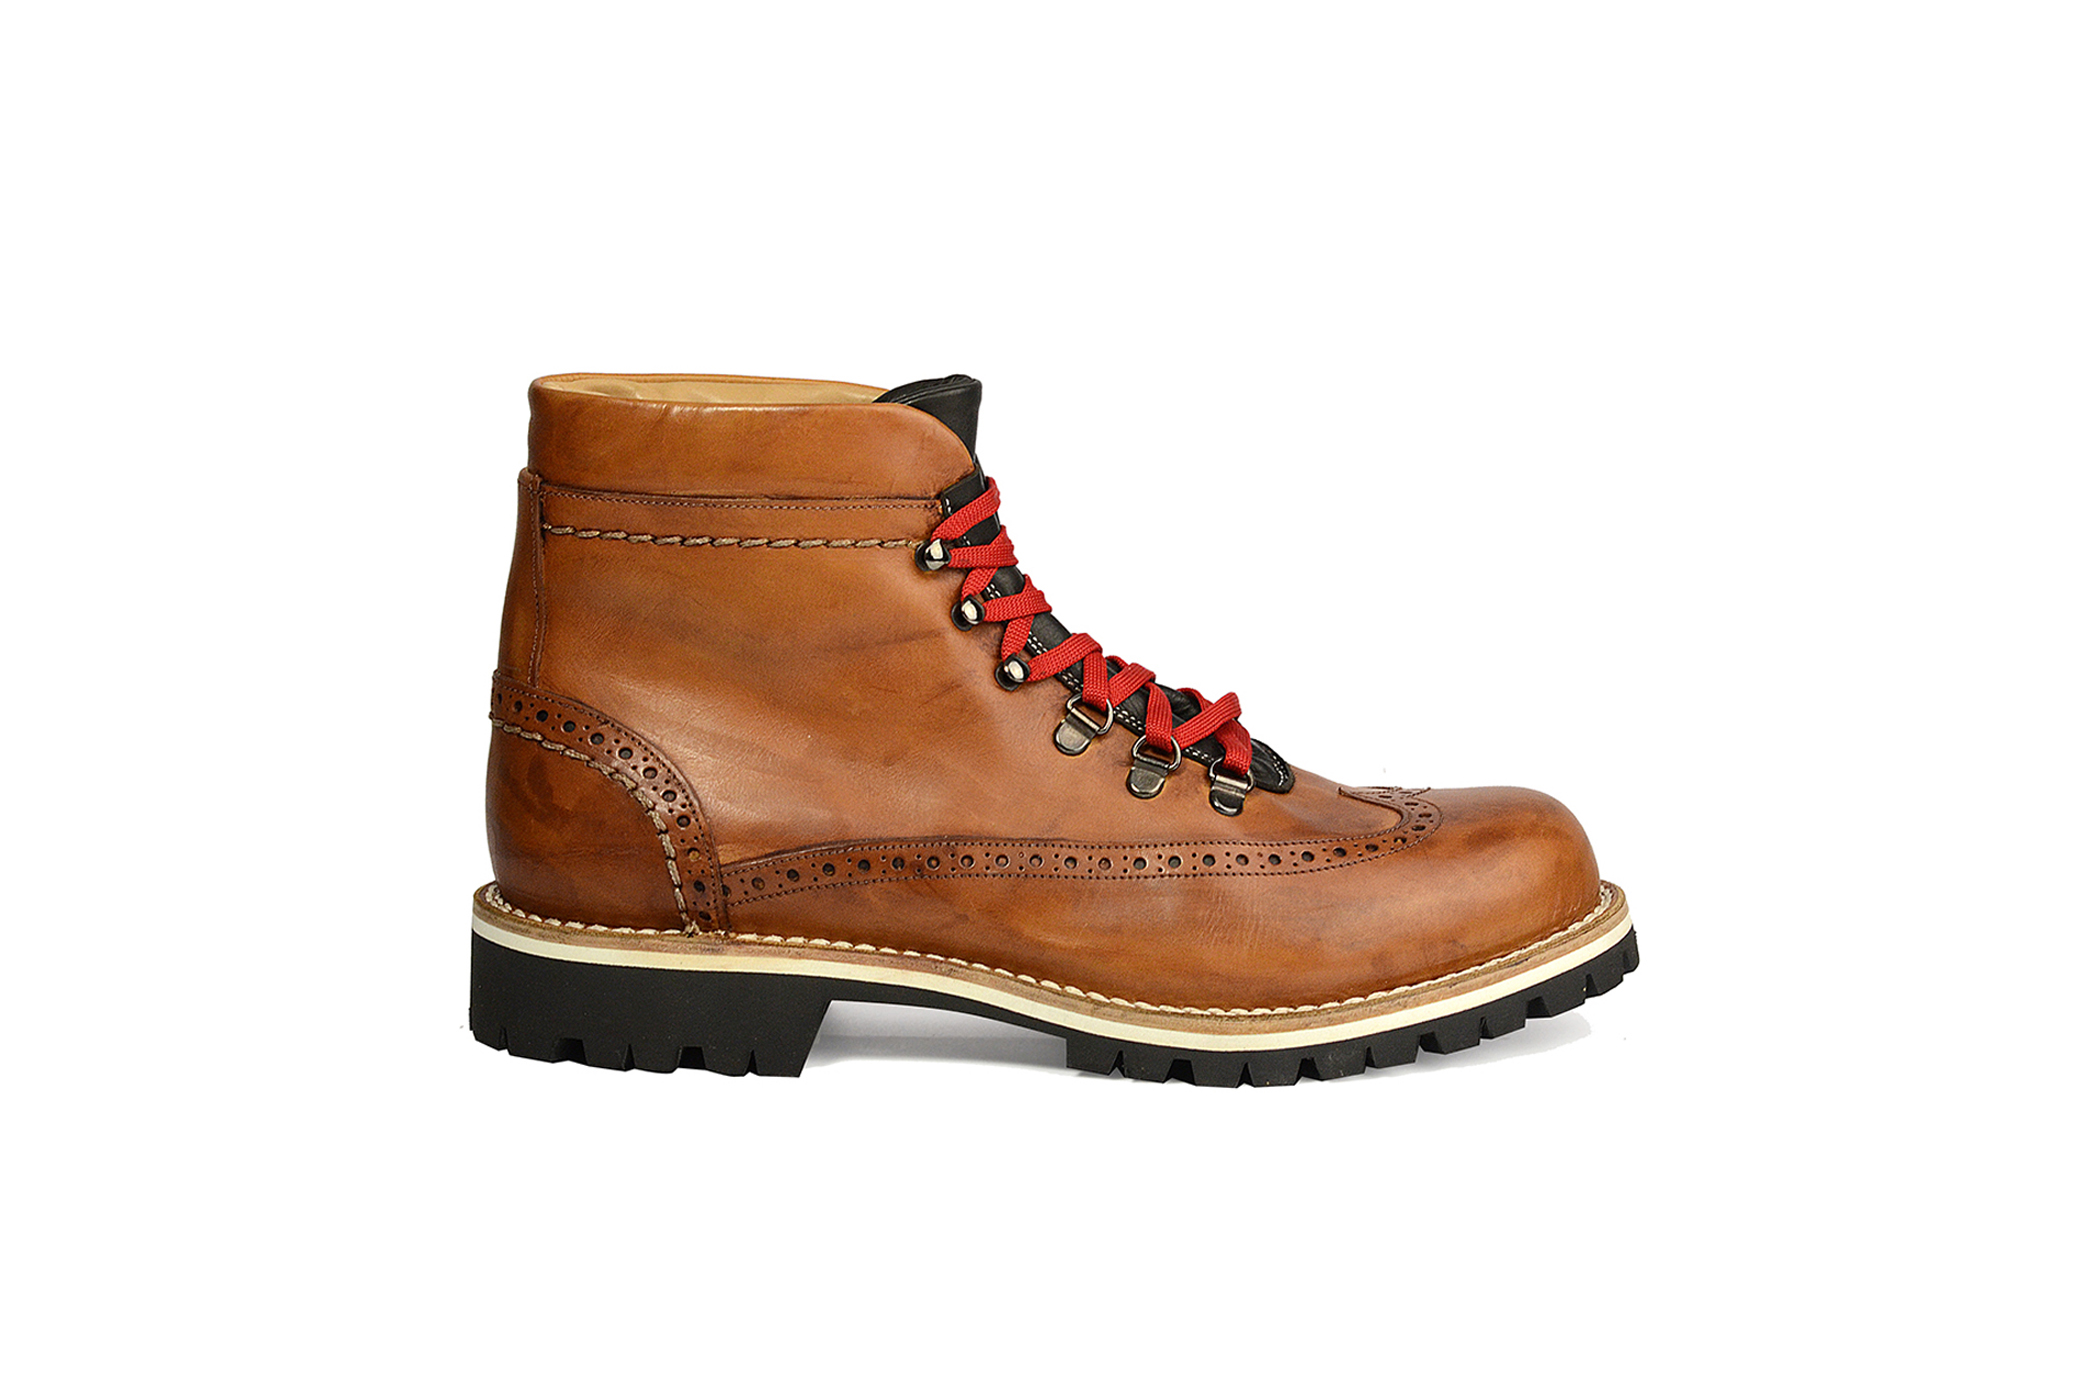 “Gianni Agnelli” Ankle Boots - Origini Italiane - ItalianShoes